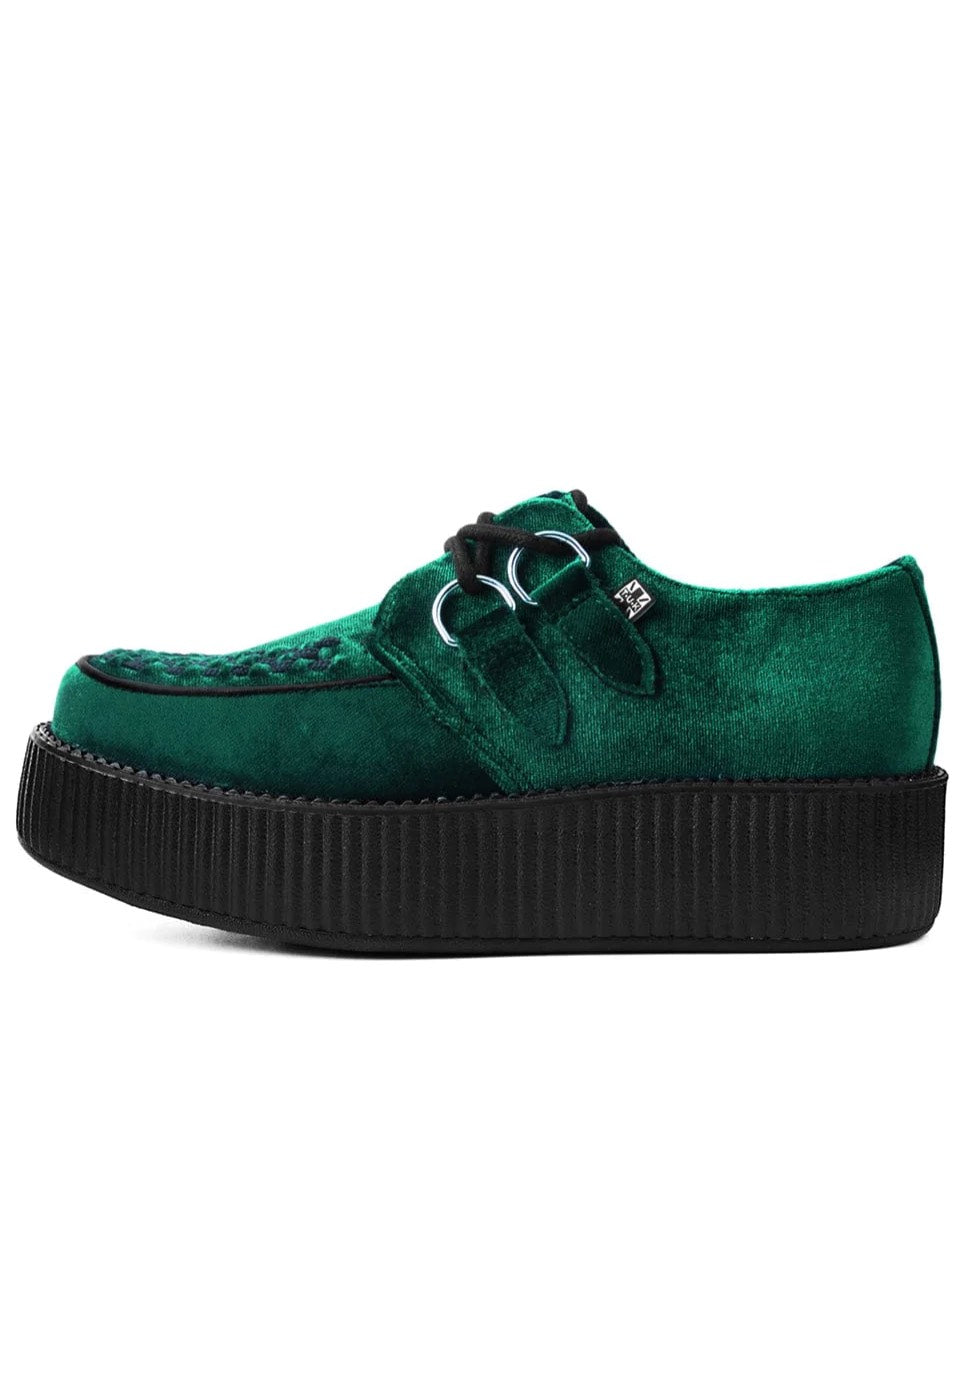 T.U.K. - Viva Mondo Creeper Emerald Green Velvet - Girl Shoes